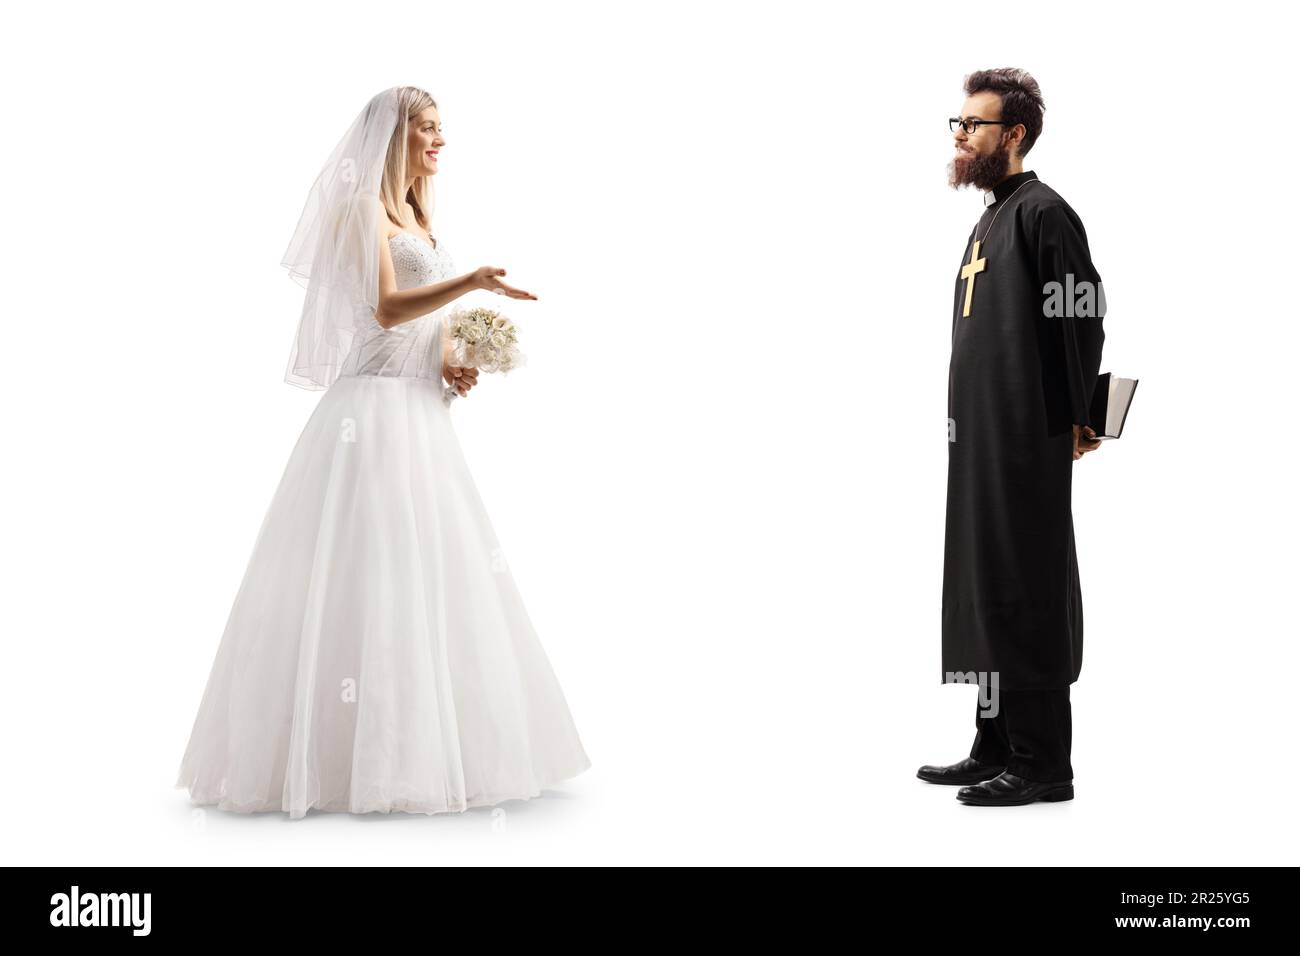 Disparo de perfil de longitud completa de una novia hablando con un sacerdote aislado sobre fondo blanco Foto de stock